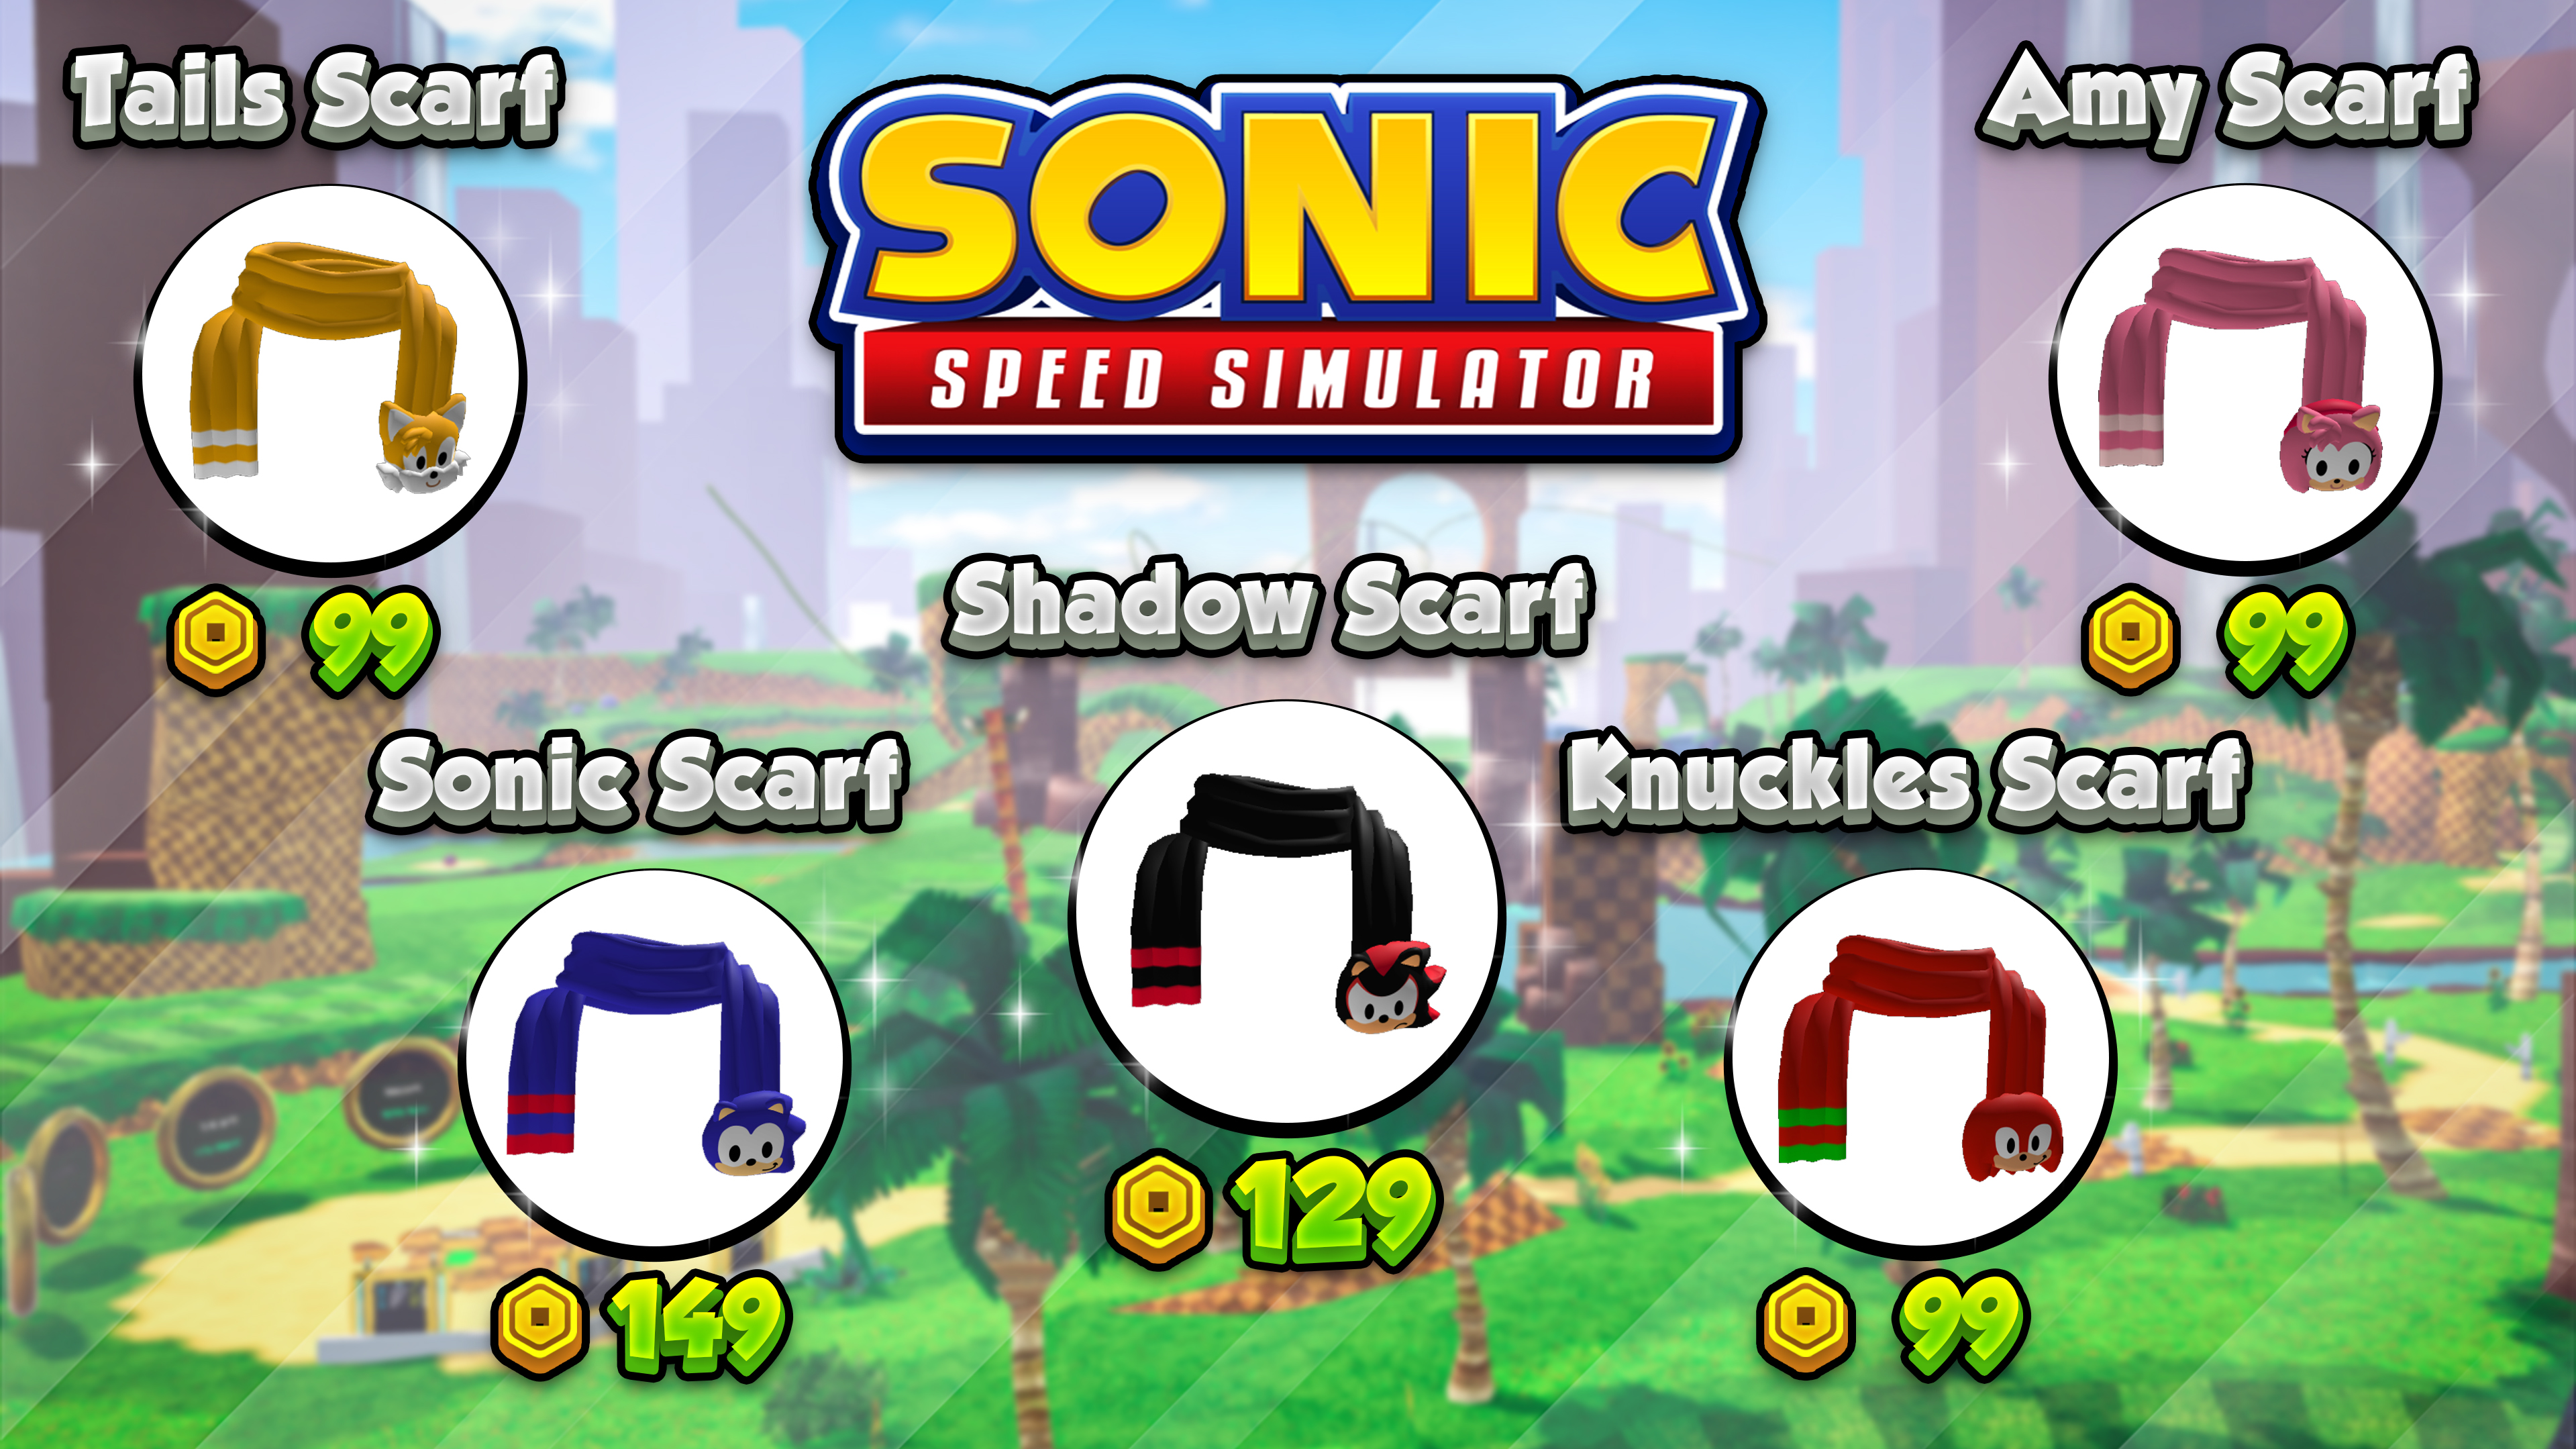 Vô vàn màu sắc và thiết kế độc đáo, chiếc khăn in hình Sonic sẽ khiến bạn trông sành điệu và thời thượng hơn. Sẽ rất thú vị khi bạn khoác nó lên đi chơi cùng bạn bè!